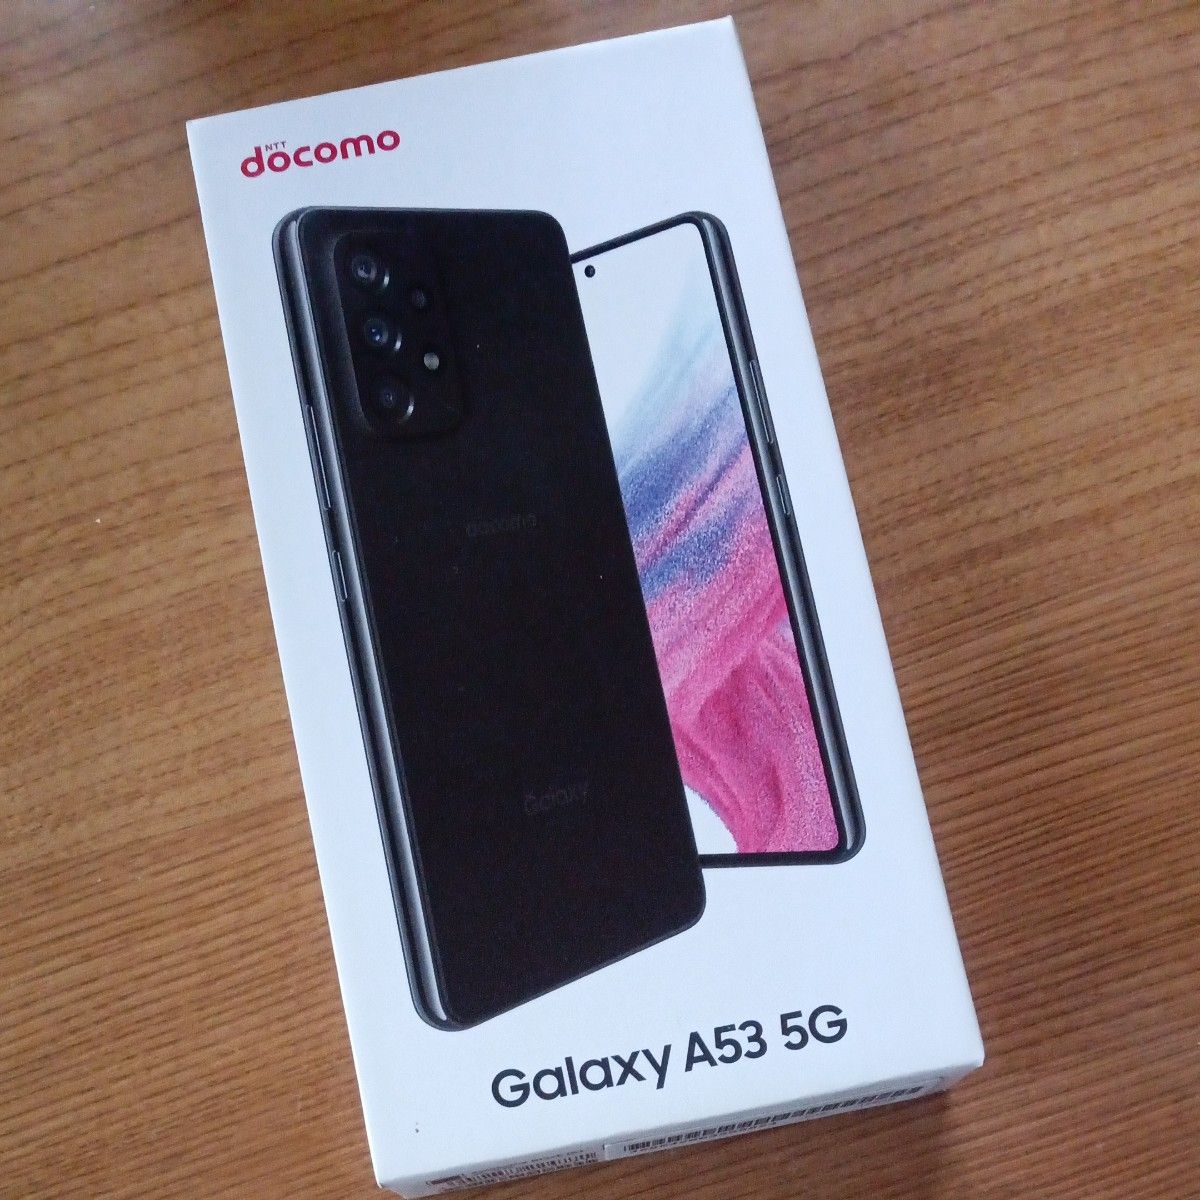 Galaxy A53 5G DOCOMOドコモ 空箱 コレクション